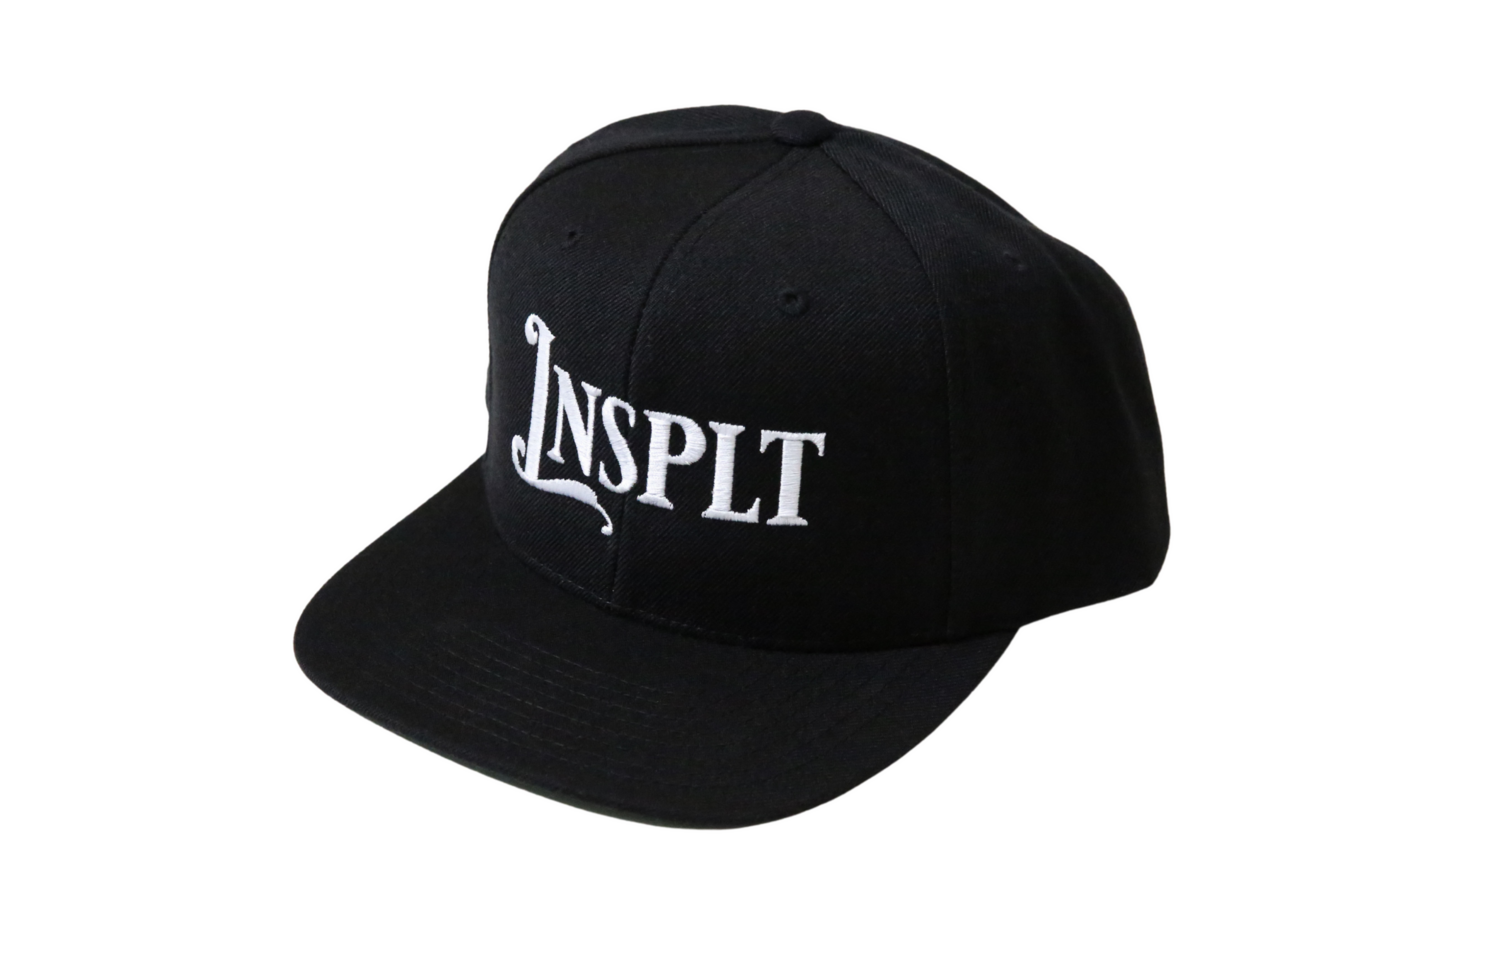 LNSPLT Snapback '20 (Black)